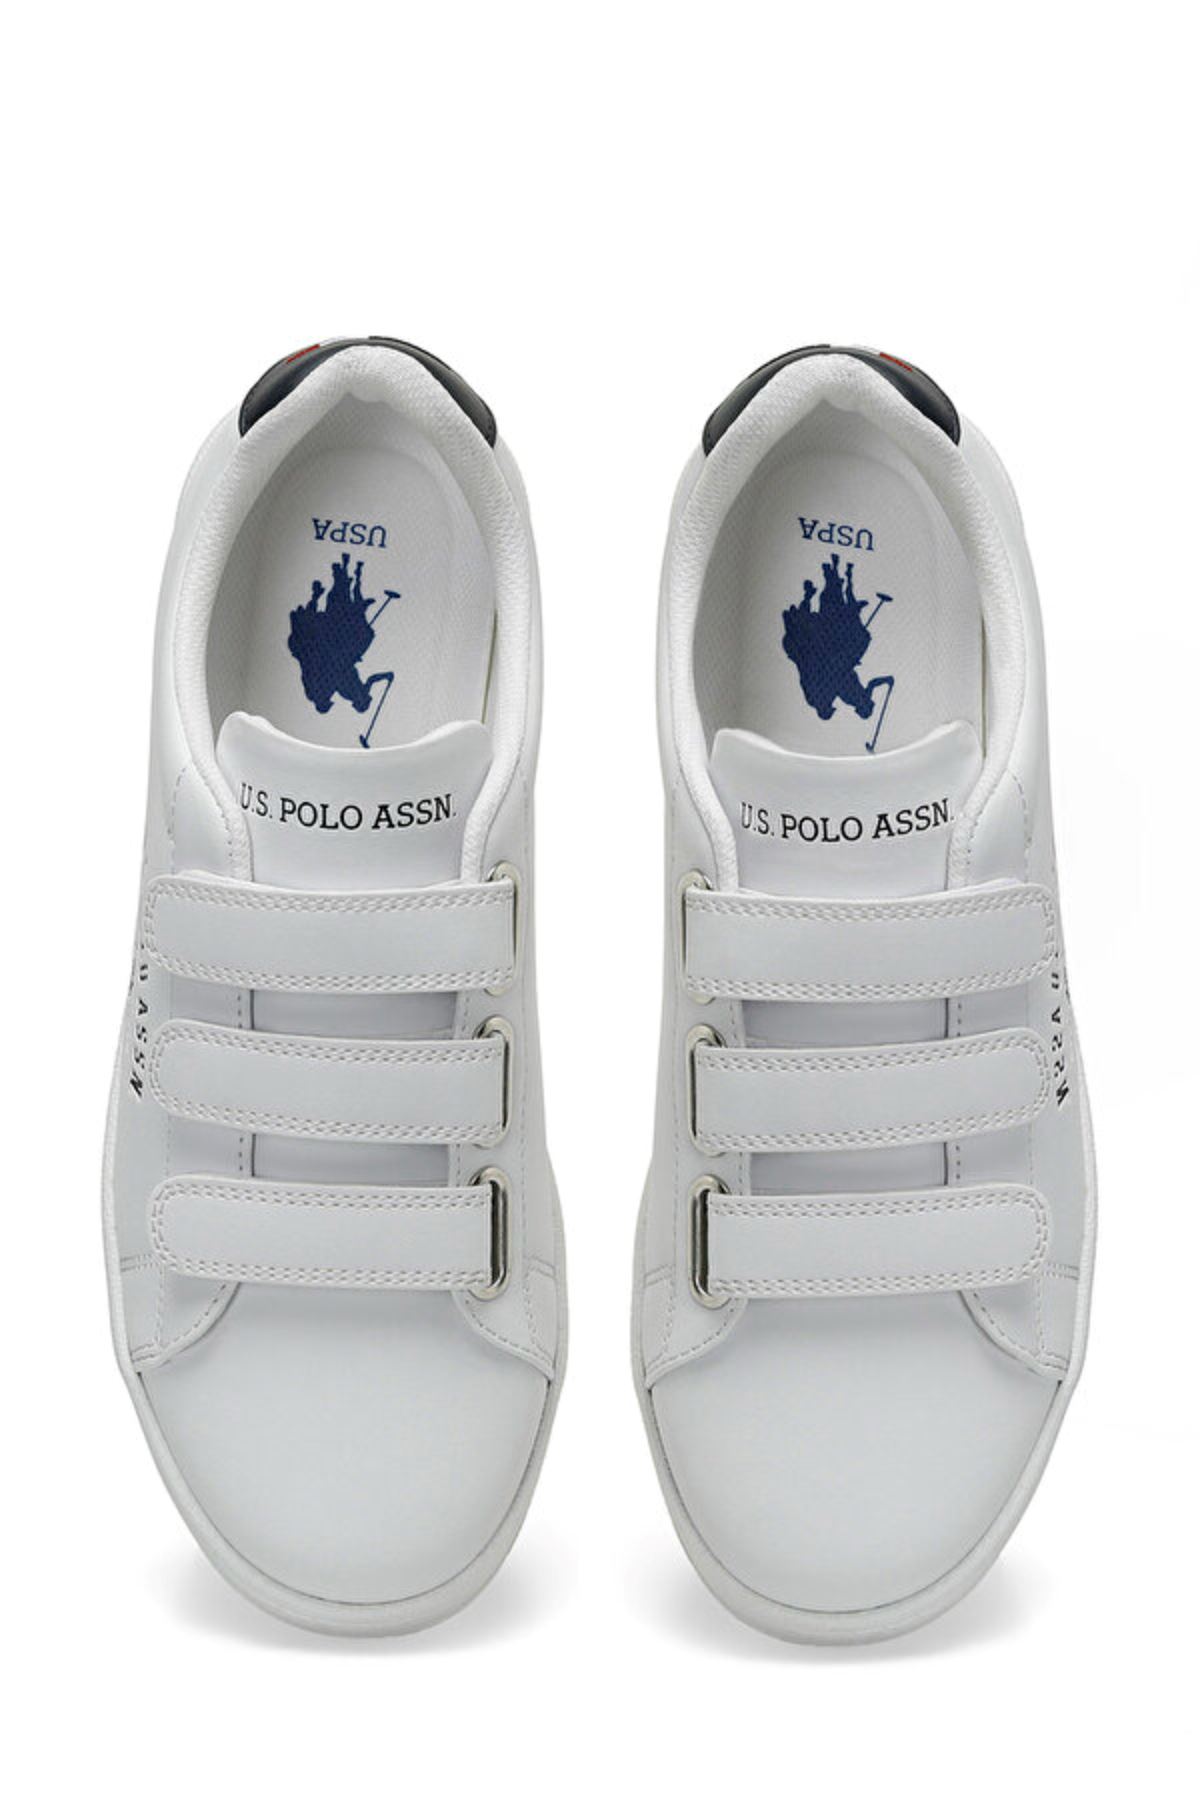 Sınger Gsn 4Fx U.S. Polo Assn. Kadın Beyaz Spor Ayakkabı - 101502265